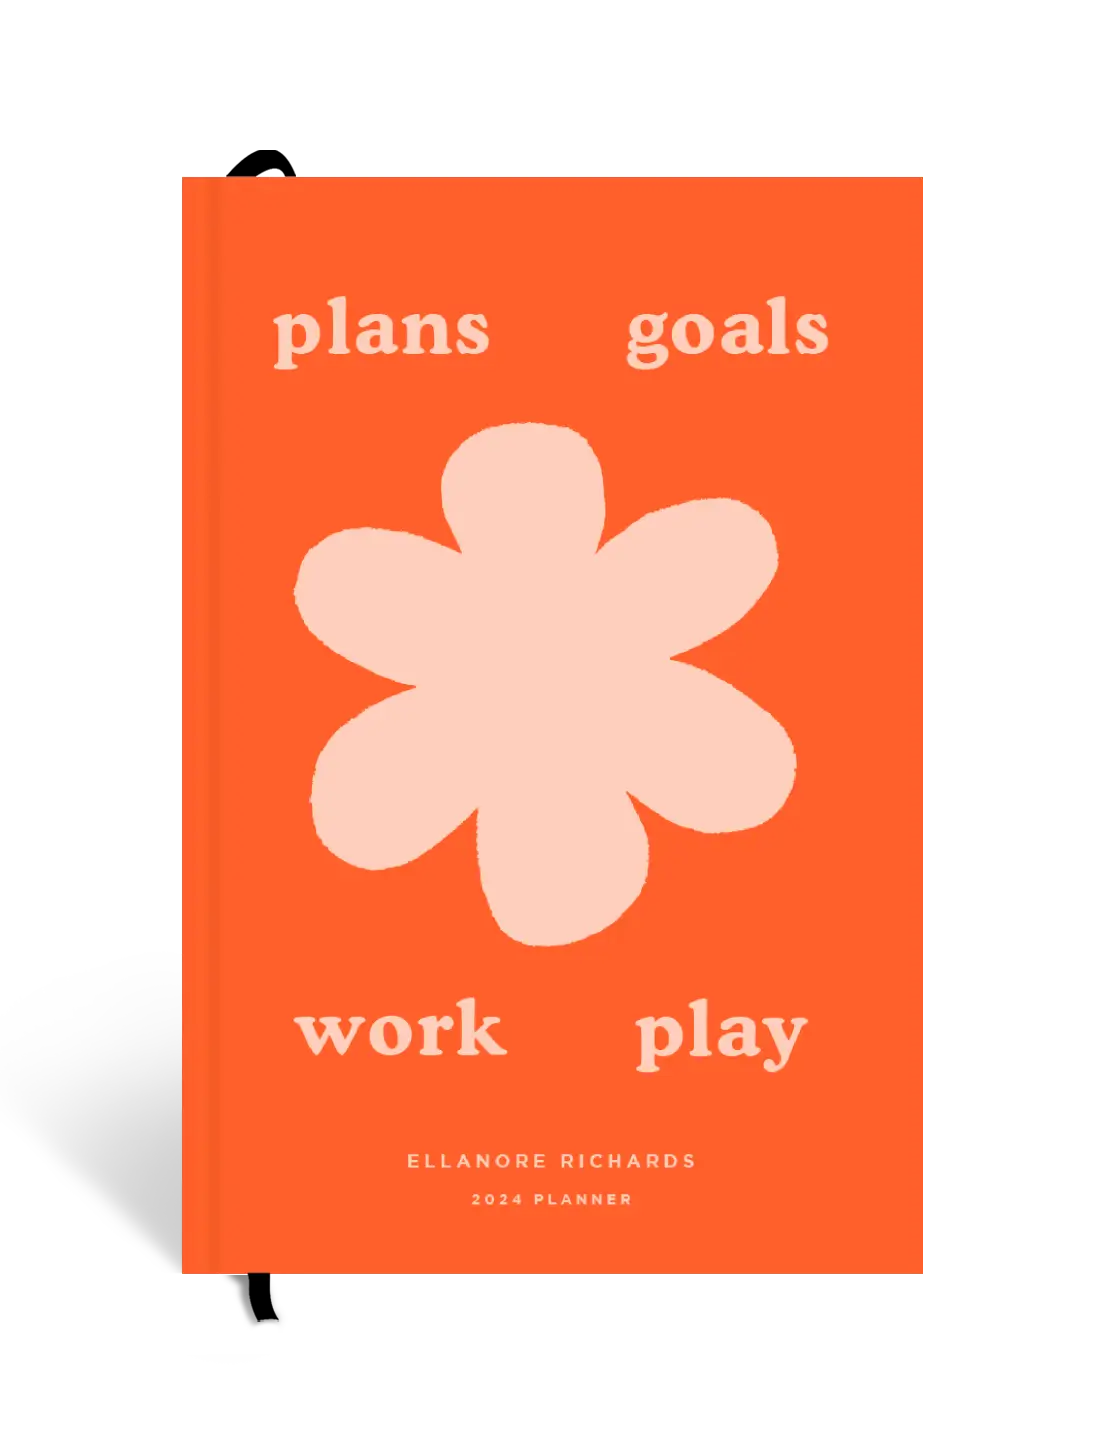 Plans & goals